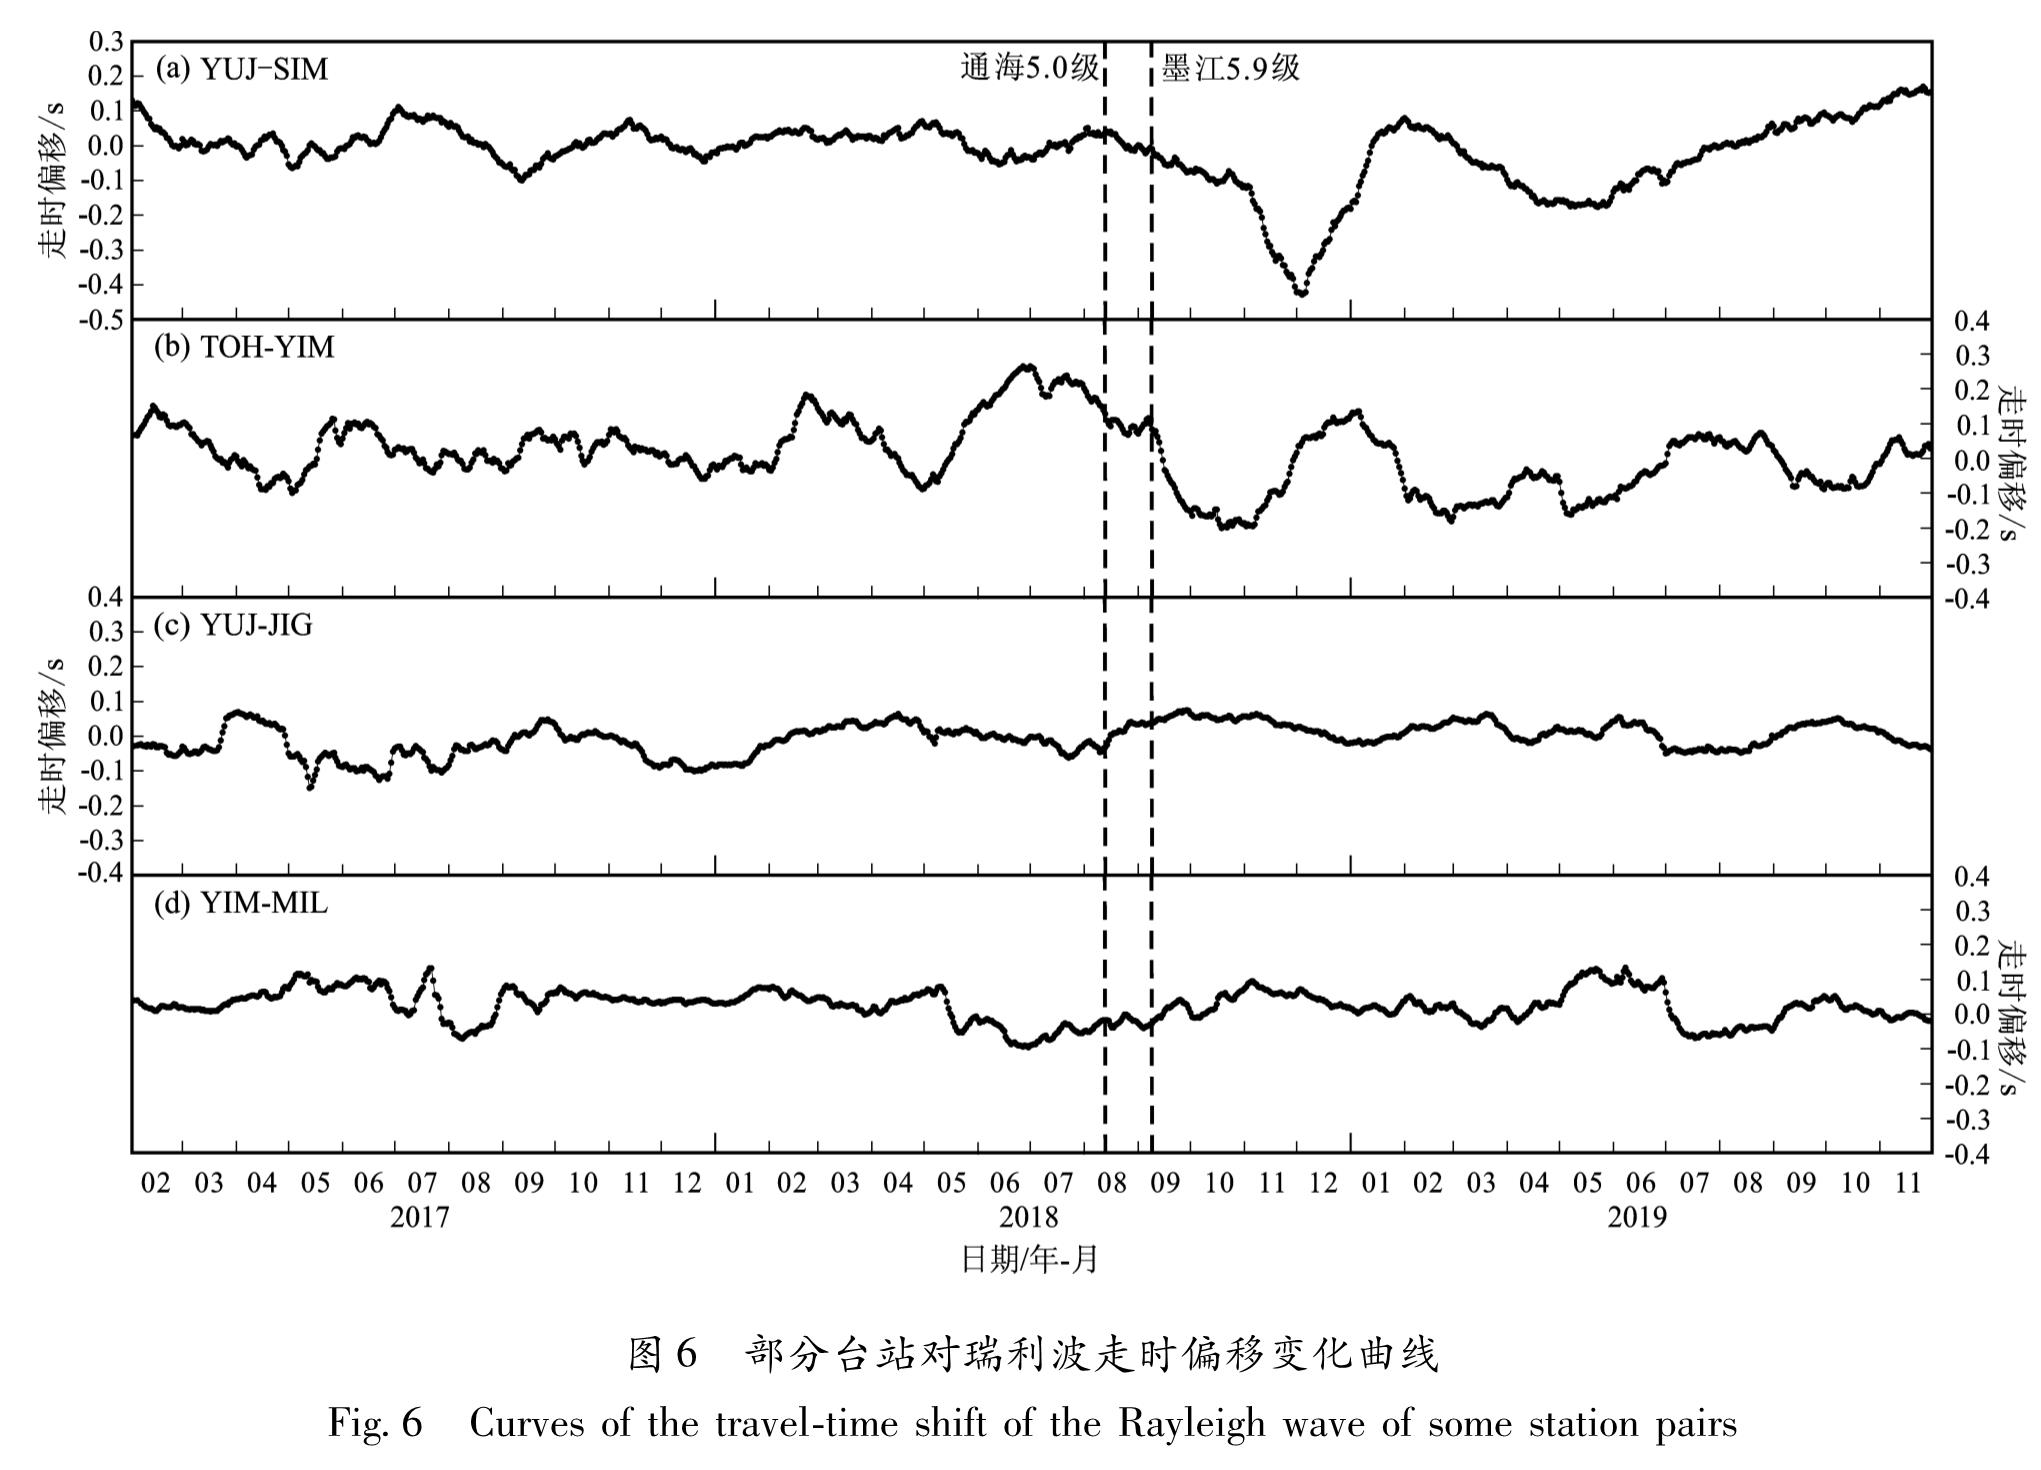 图6 部分台站对瑞利波走时偏移变化曲线<br/>Fig.6 Curves of the travel-time shift of the Rayleigh wave of some station pairs